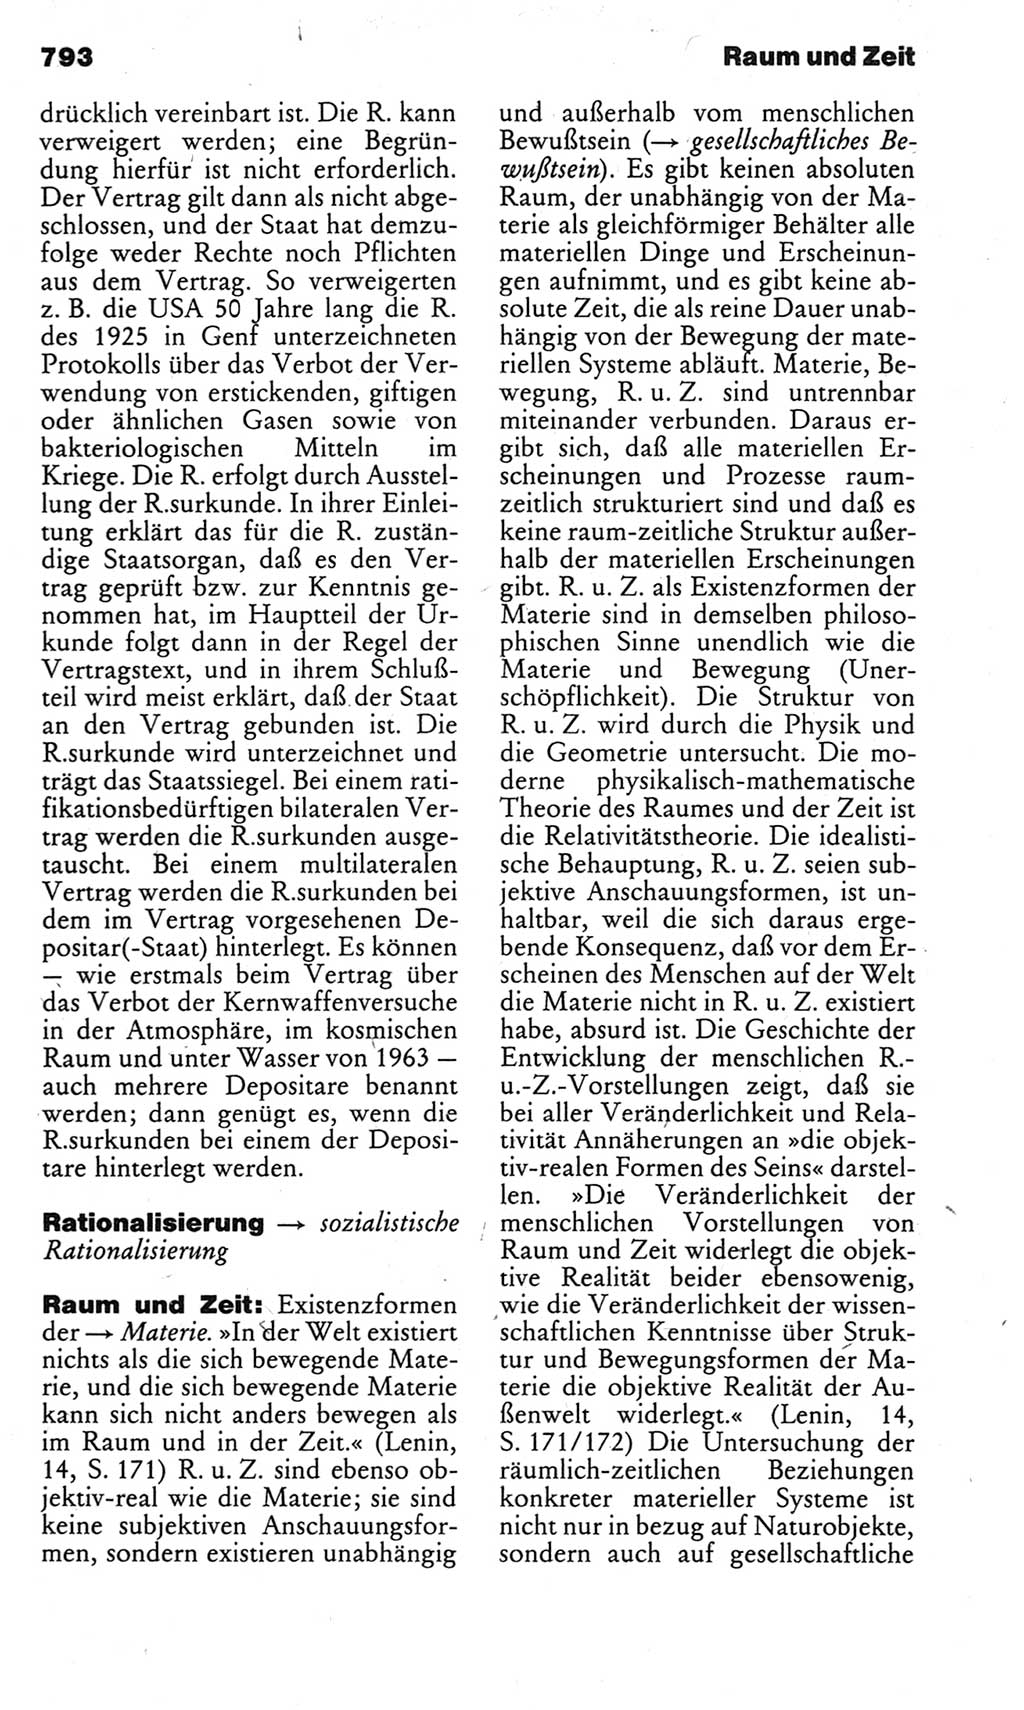 Kleines politisches Wörterbuch [Deutsche Demokratische Republik (DDR)] 1983, Seite 793 (Kl. pol. Wb. DDR 1983, S. 793)